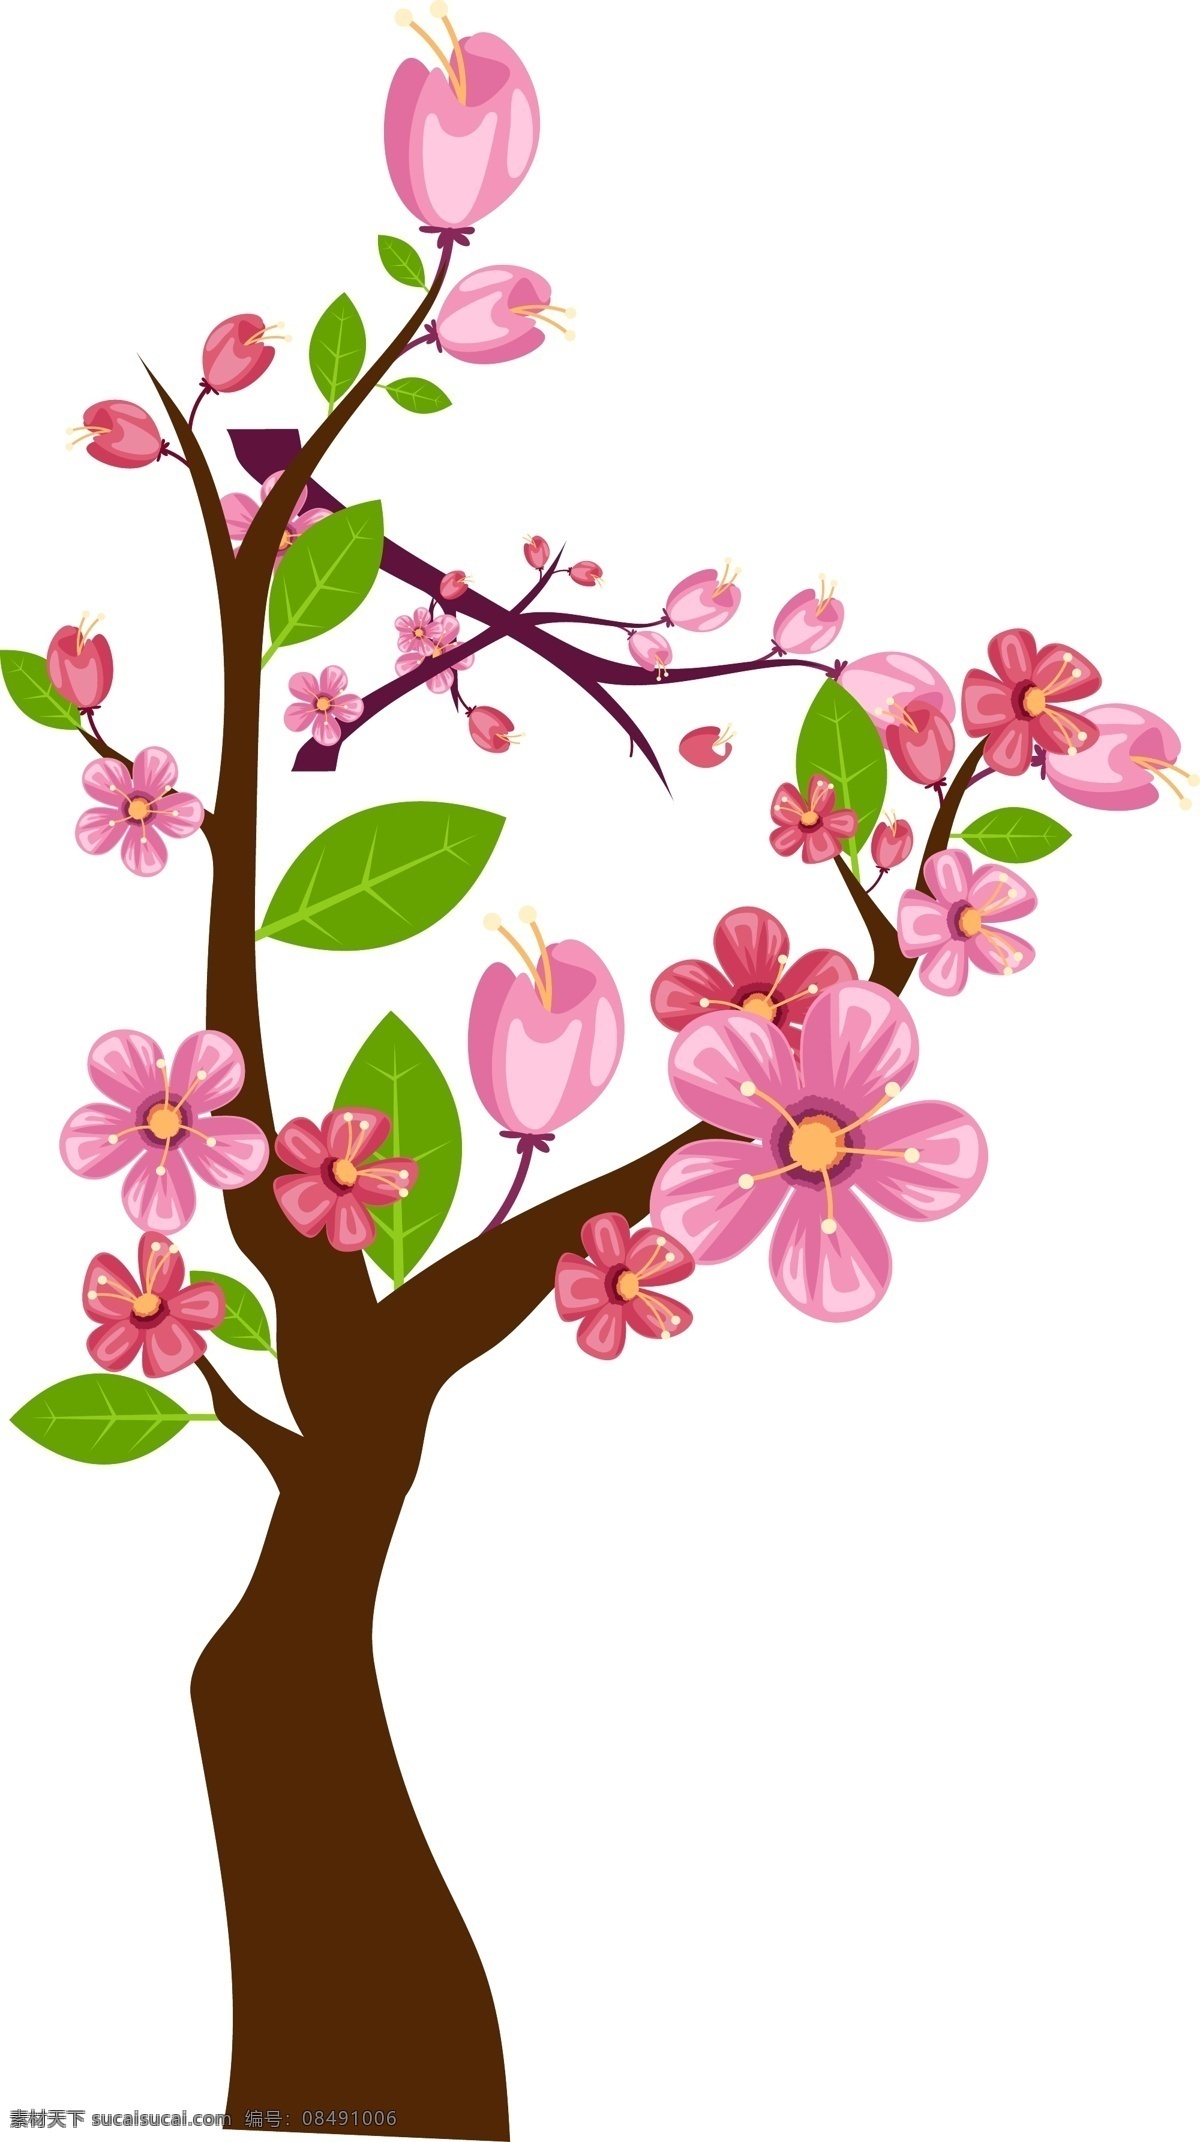 三生 三世 十里 桃花 树 植物 粉红色 卡通